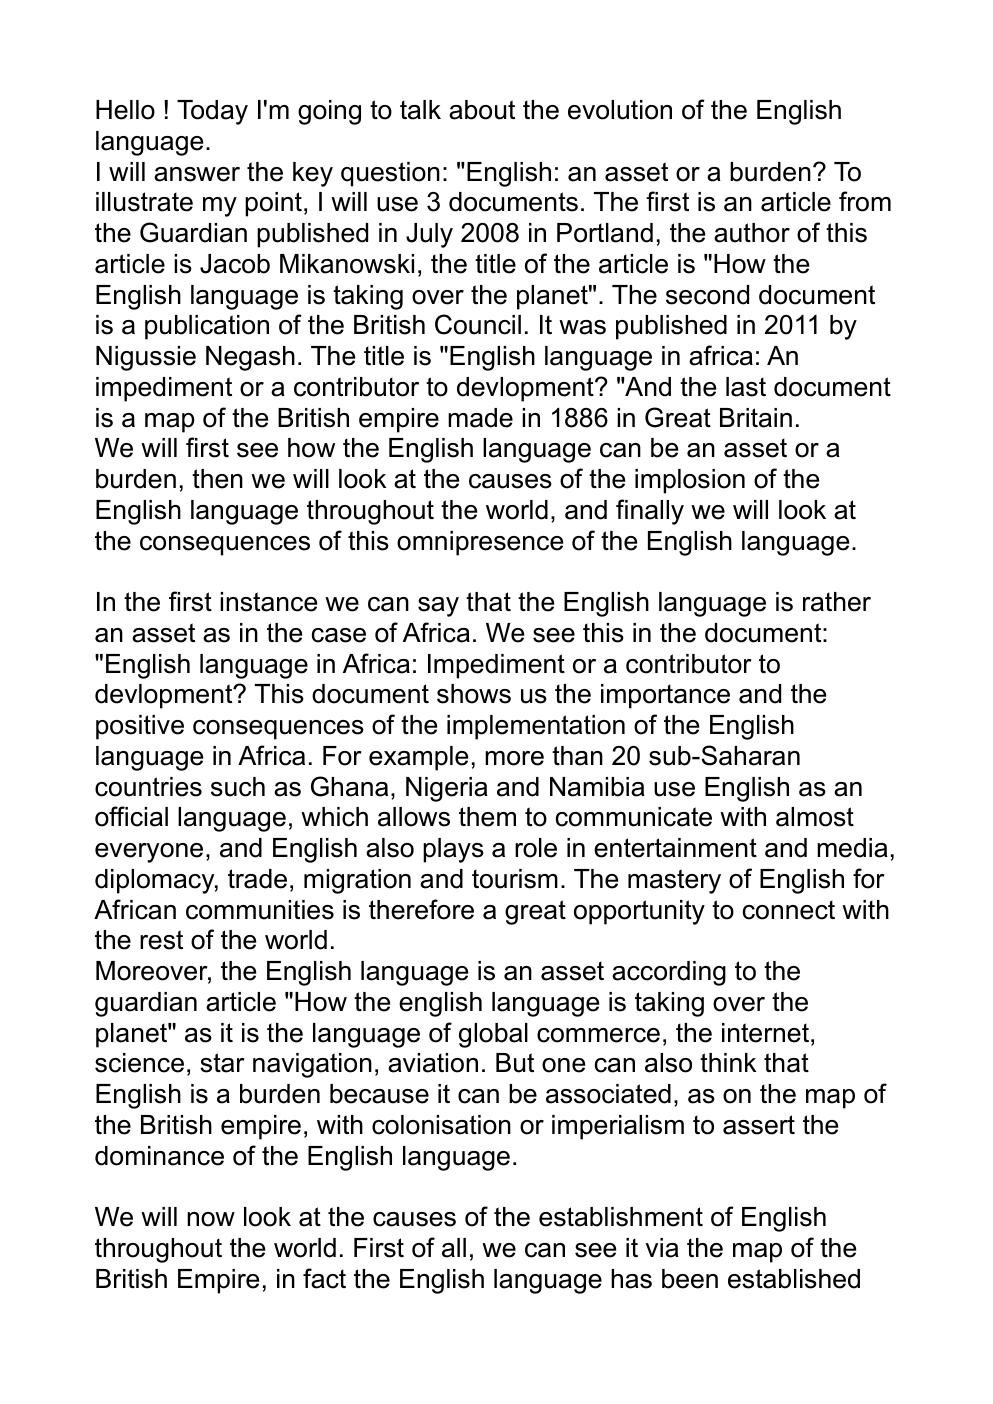 Prévisualisation du document exposé Anglais sur l'évolution de la langue anglaise